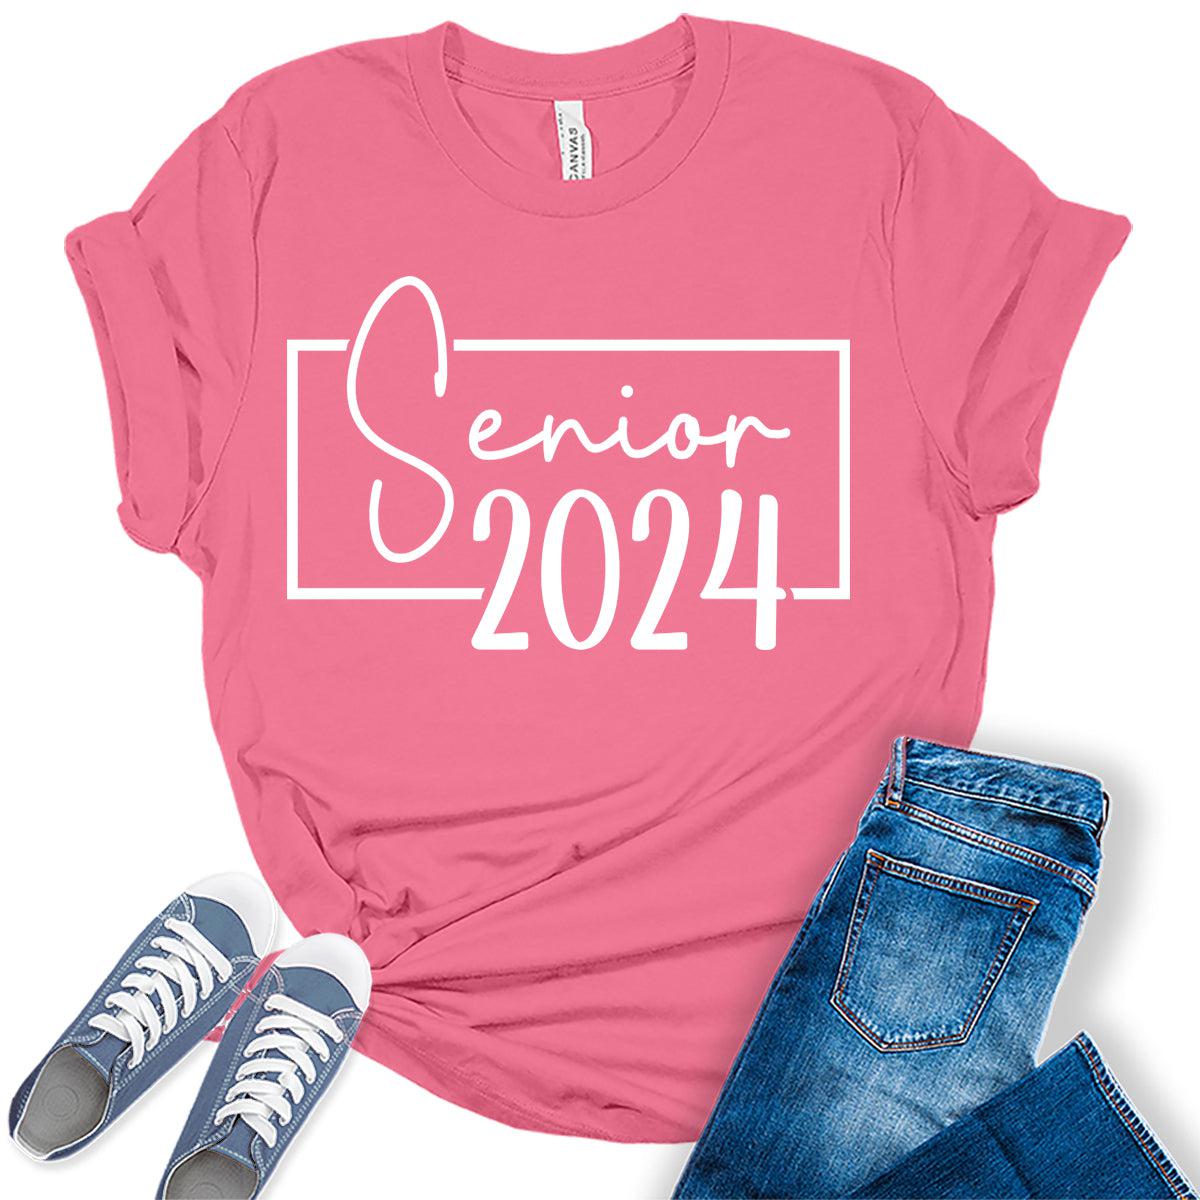 Senior 2024 Letter Print Graphic Tees for Women